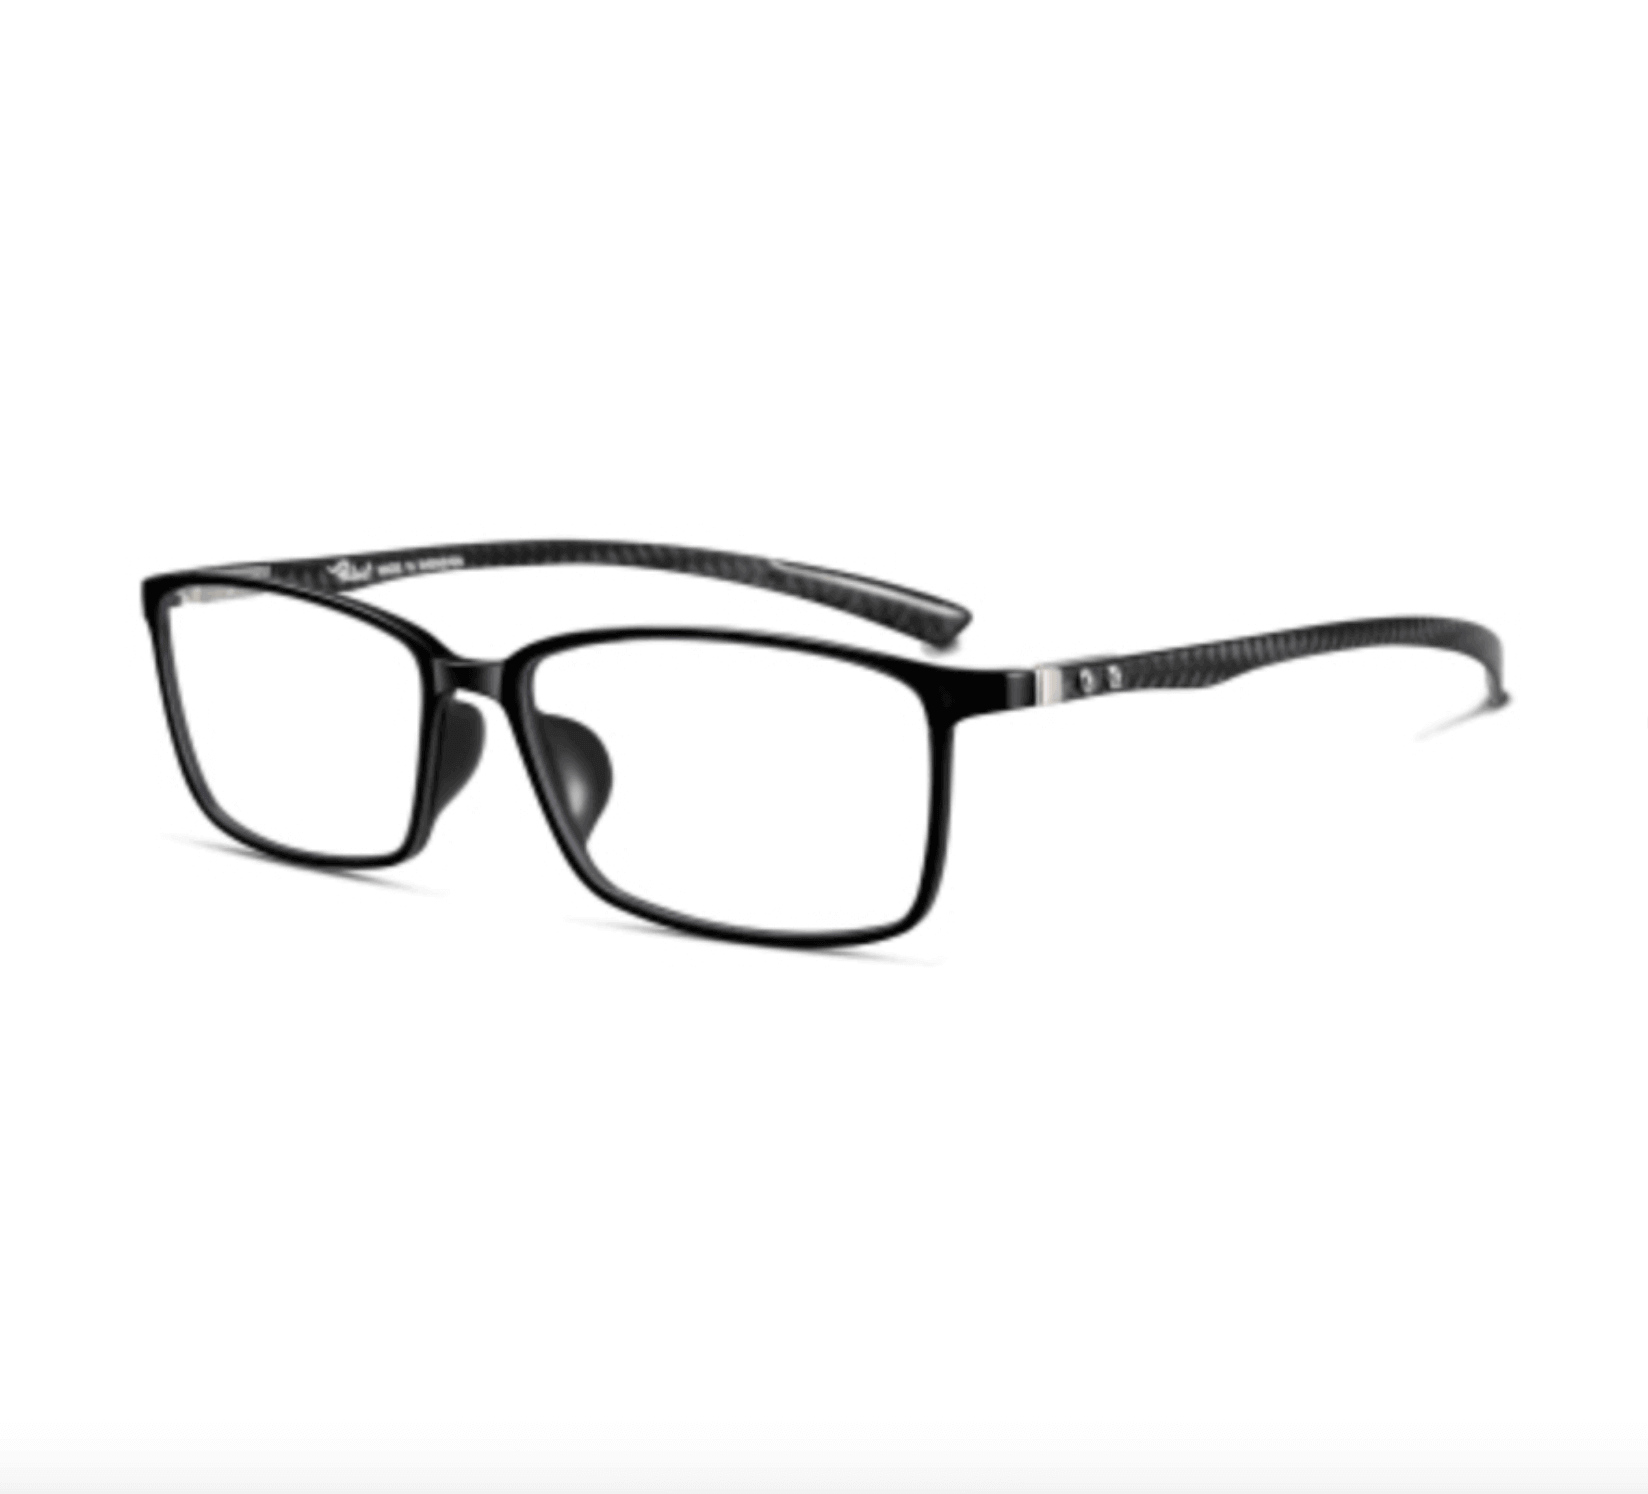 Carbon Fiber Glasses Frame, Eyeglasses manufacturer